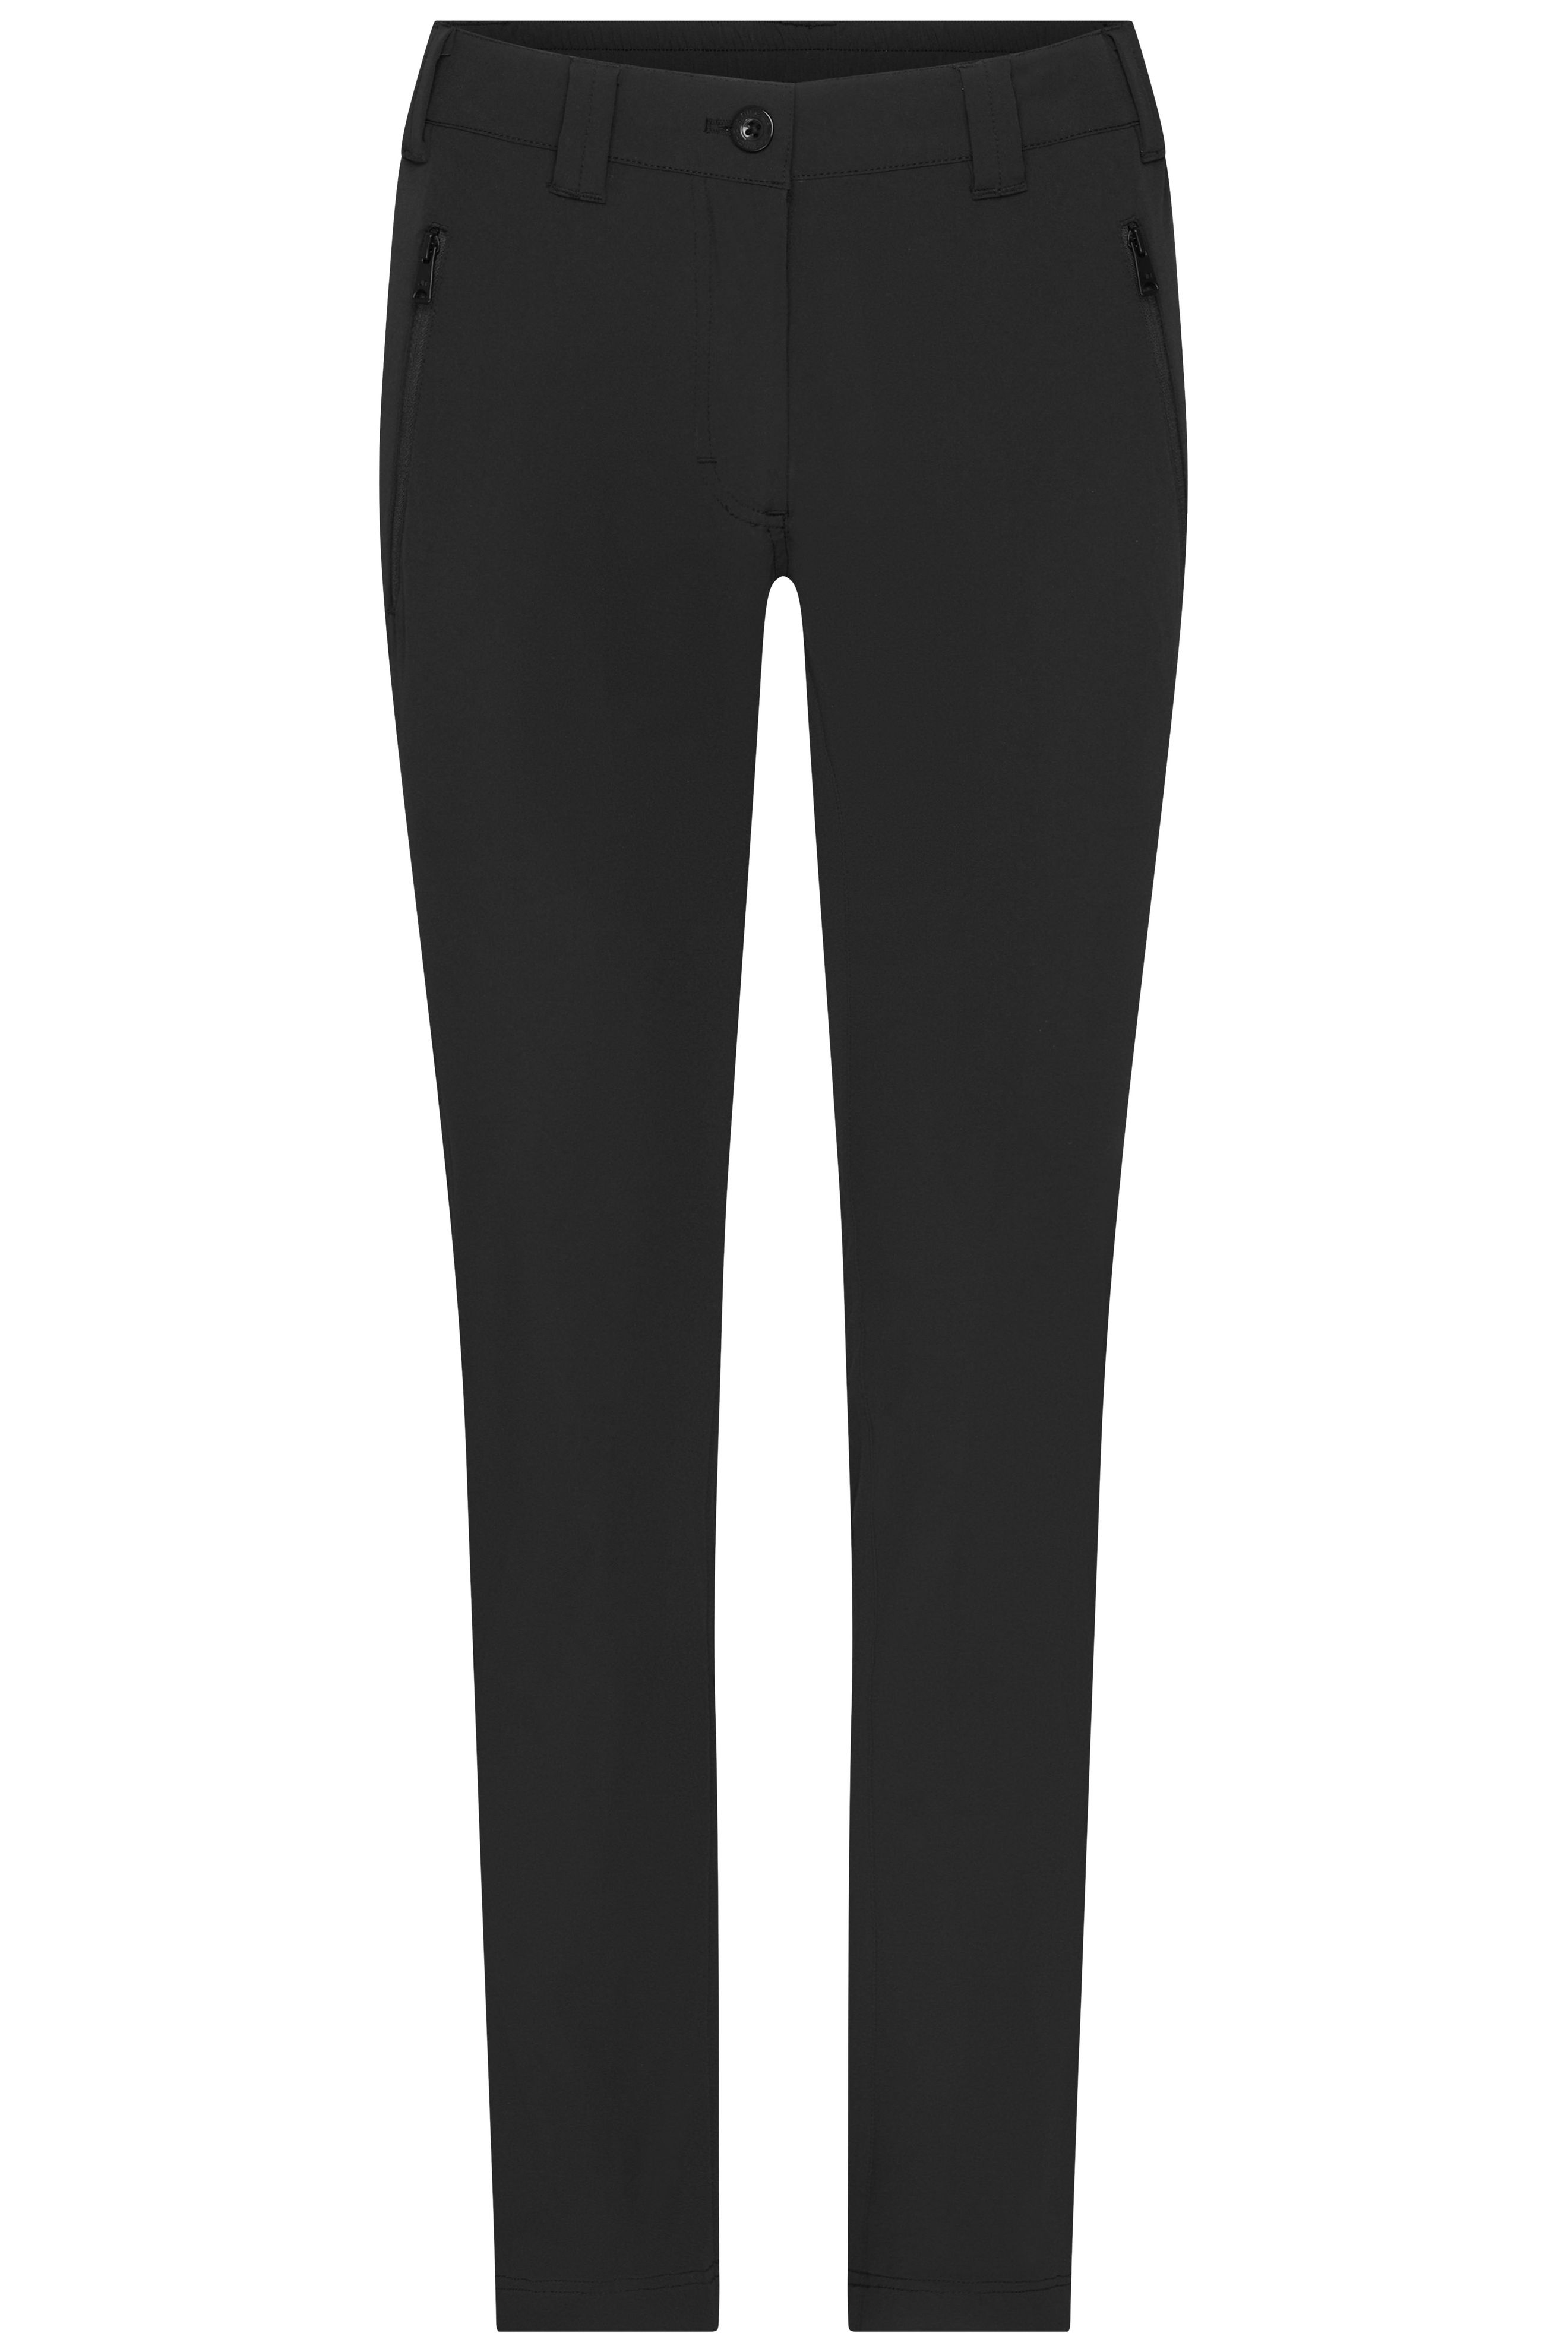 Ladies' Pants JN1207 Bi-elastische Hose in sportlicher Optik